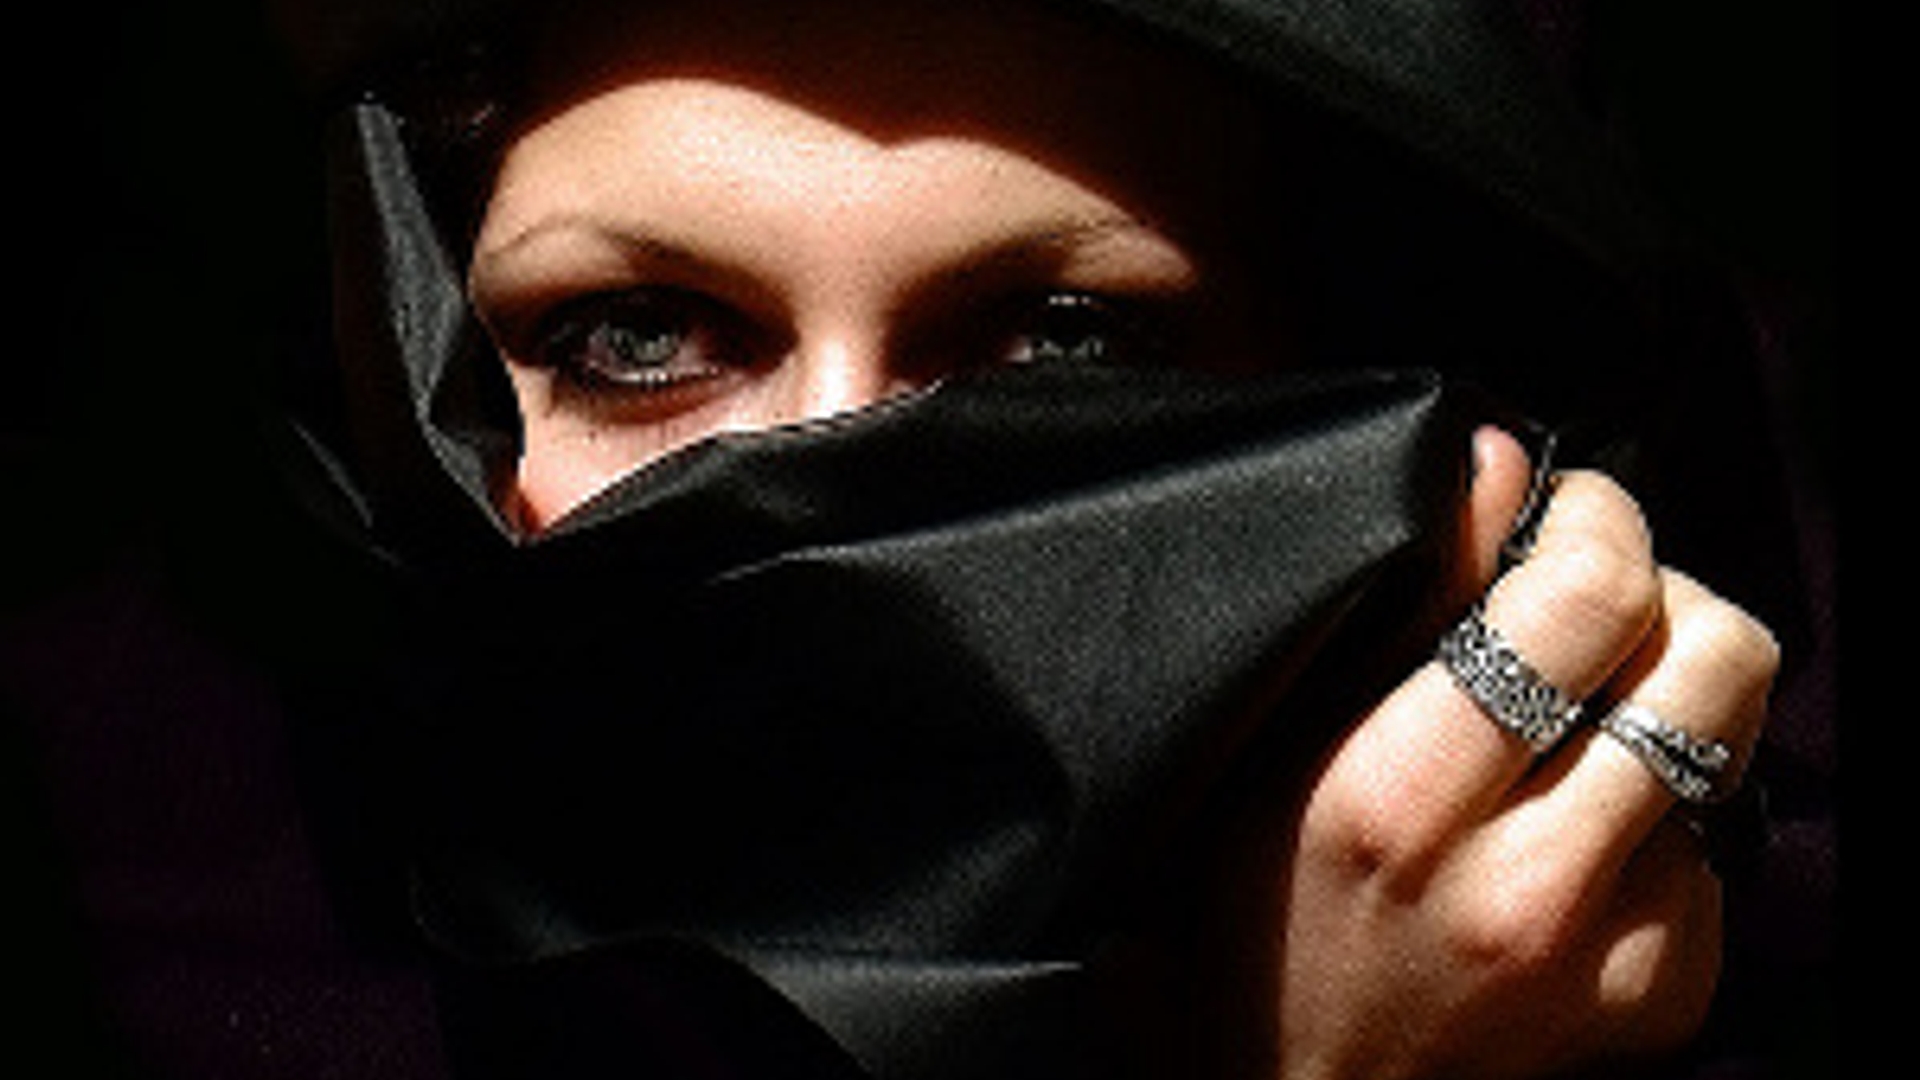 burka-babe-flickr-cc.jpg